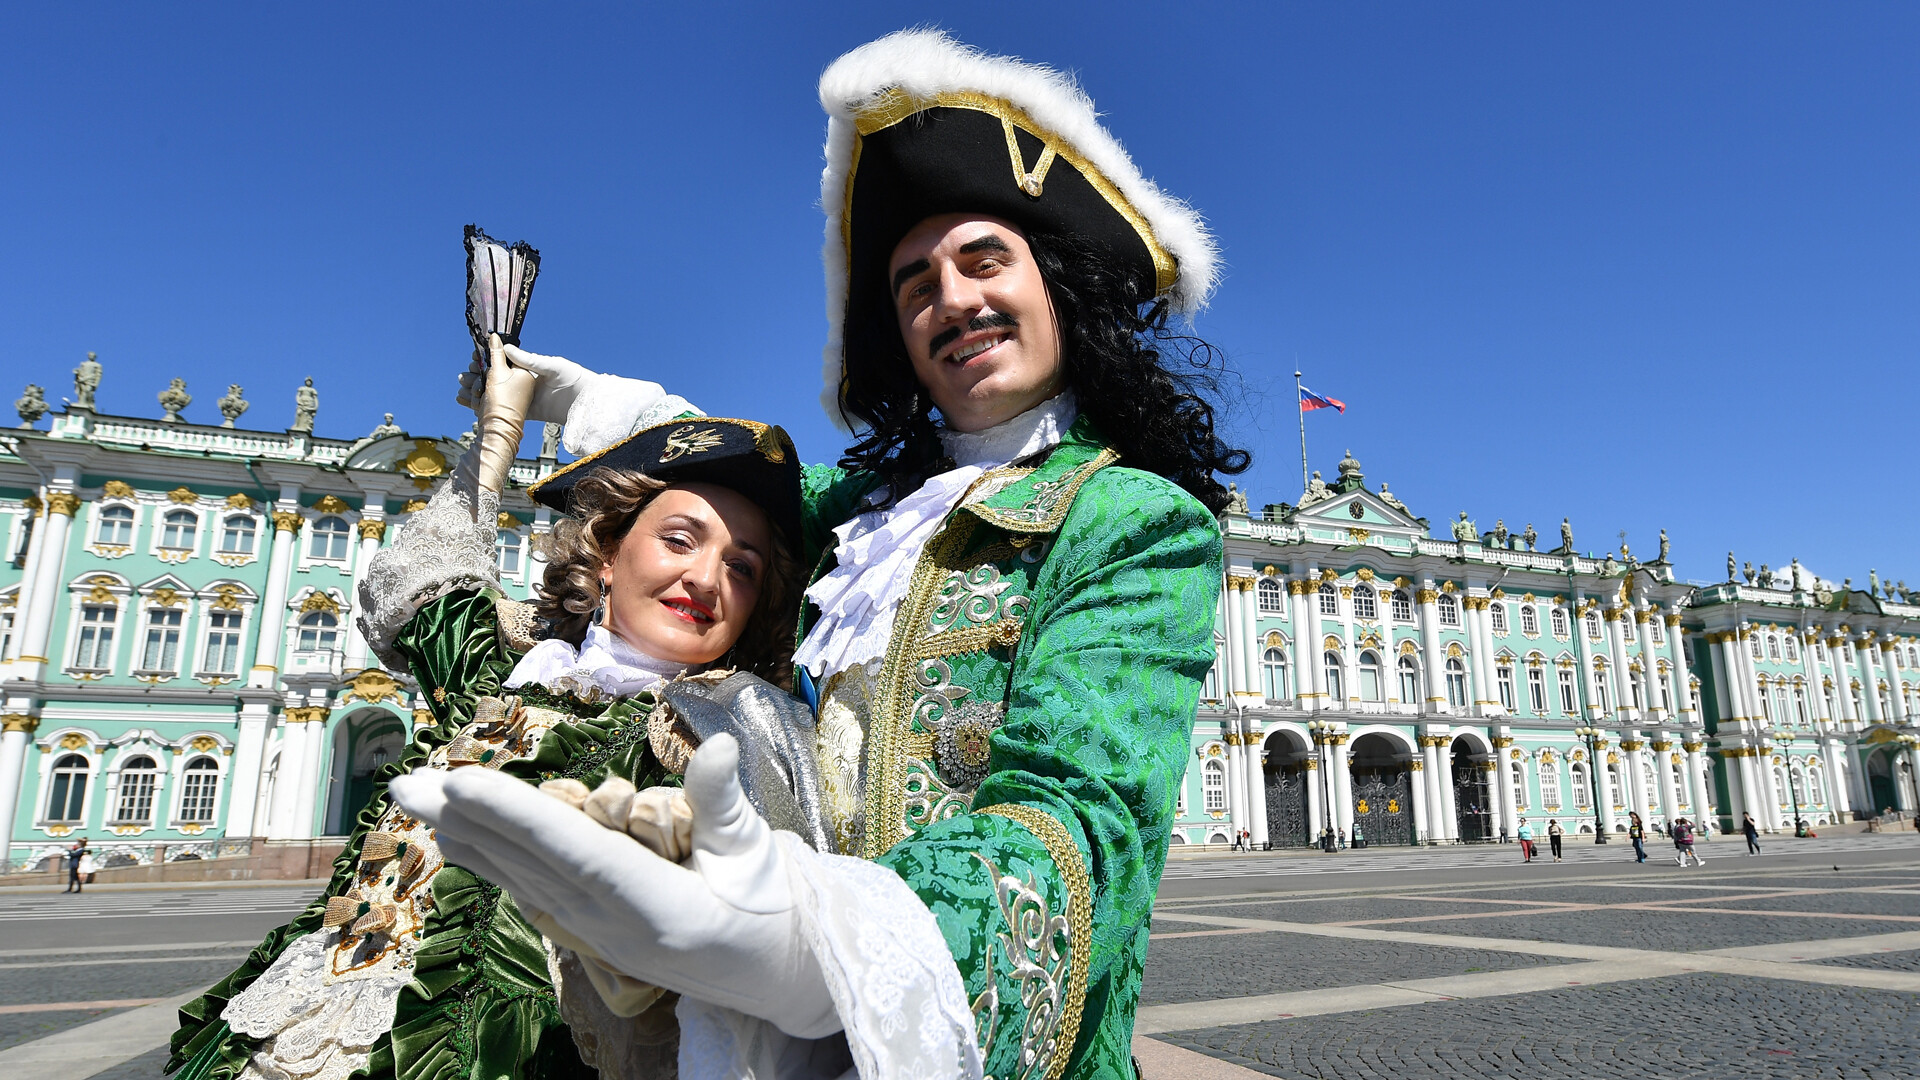 Par v starinskih kostumih pozira pred muzejem Ermitaž 19. junija 2017 v Sankt Peterburgu v Rusiji